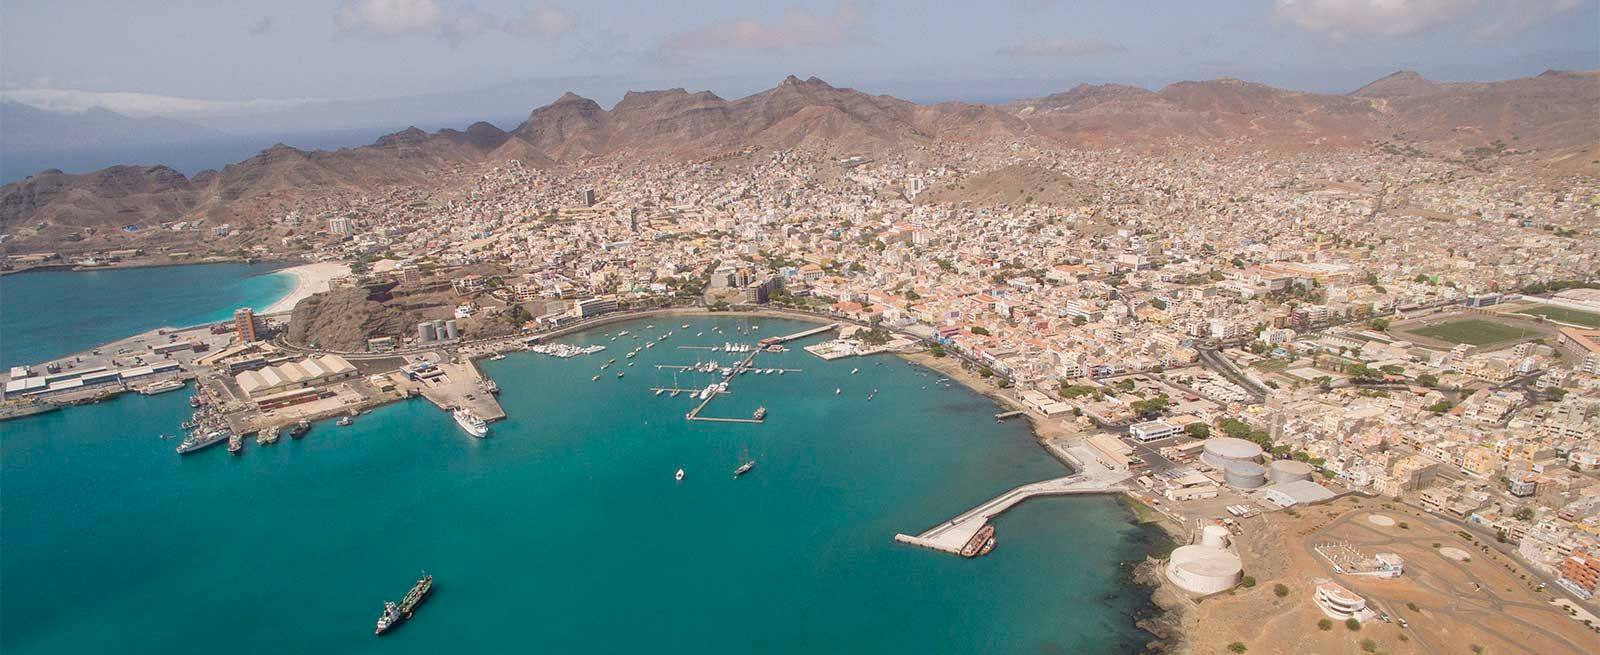 Ilha de São Vicente - Cabo Verde